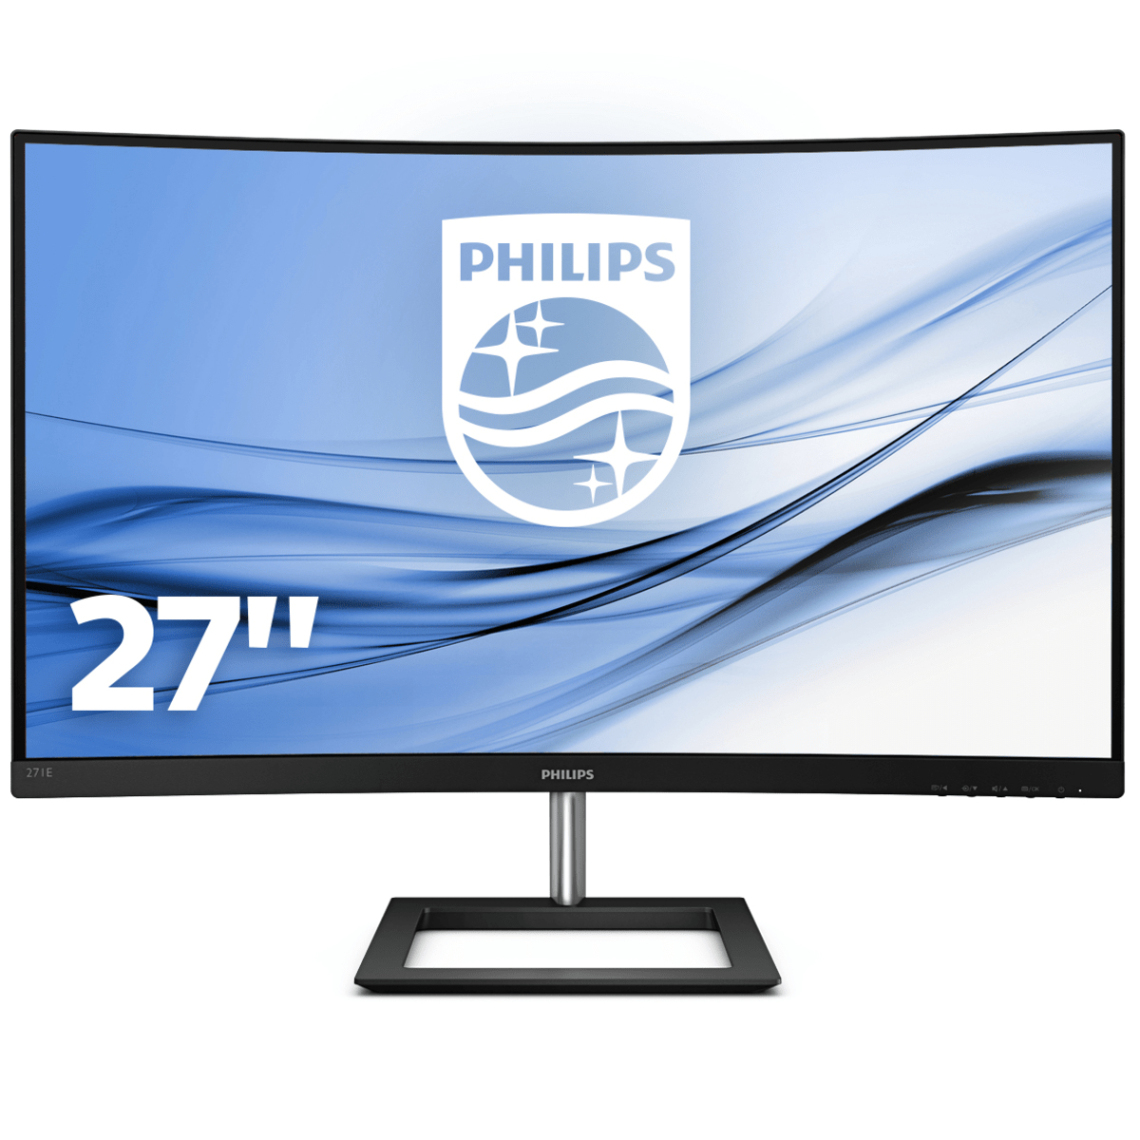 Philips - 27"" 271E1CA/00 - Moniteur PC